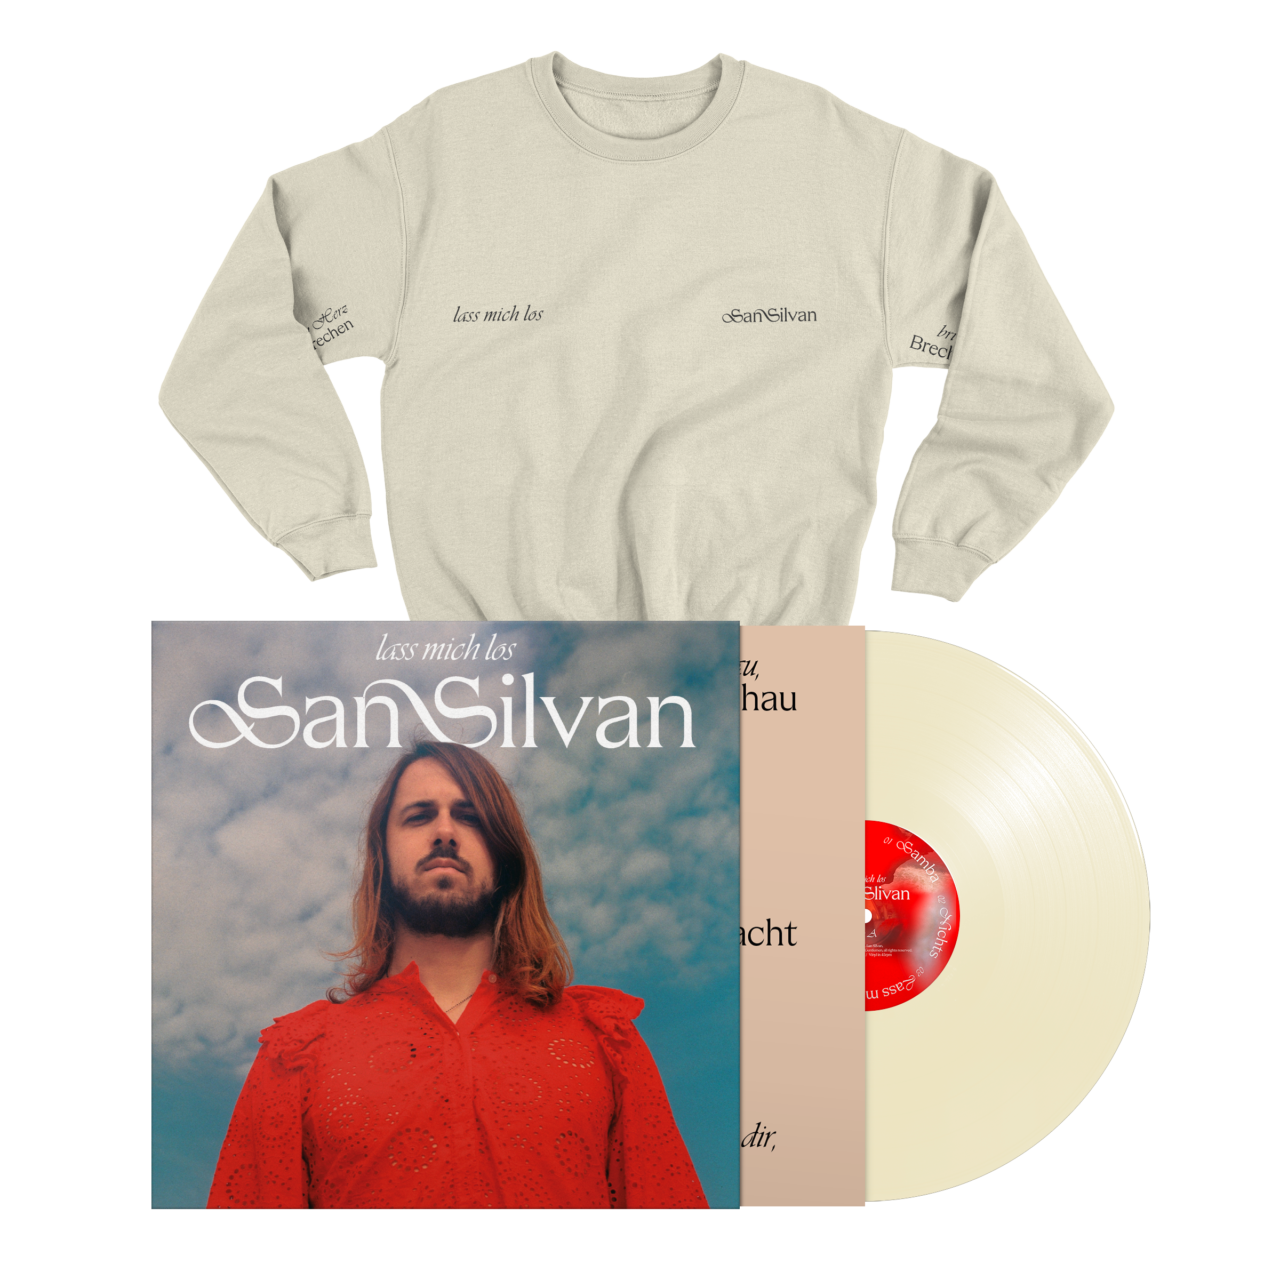 San Silvan - Lass mich los Sweatshirt and Album Bundle